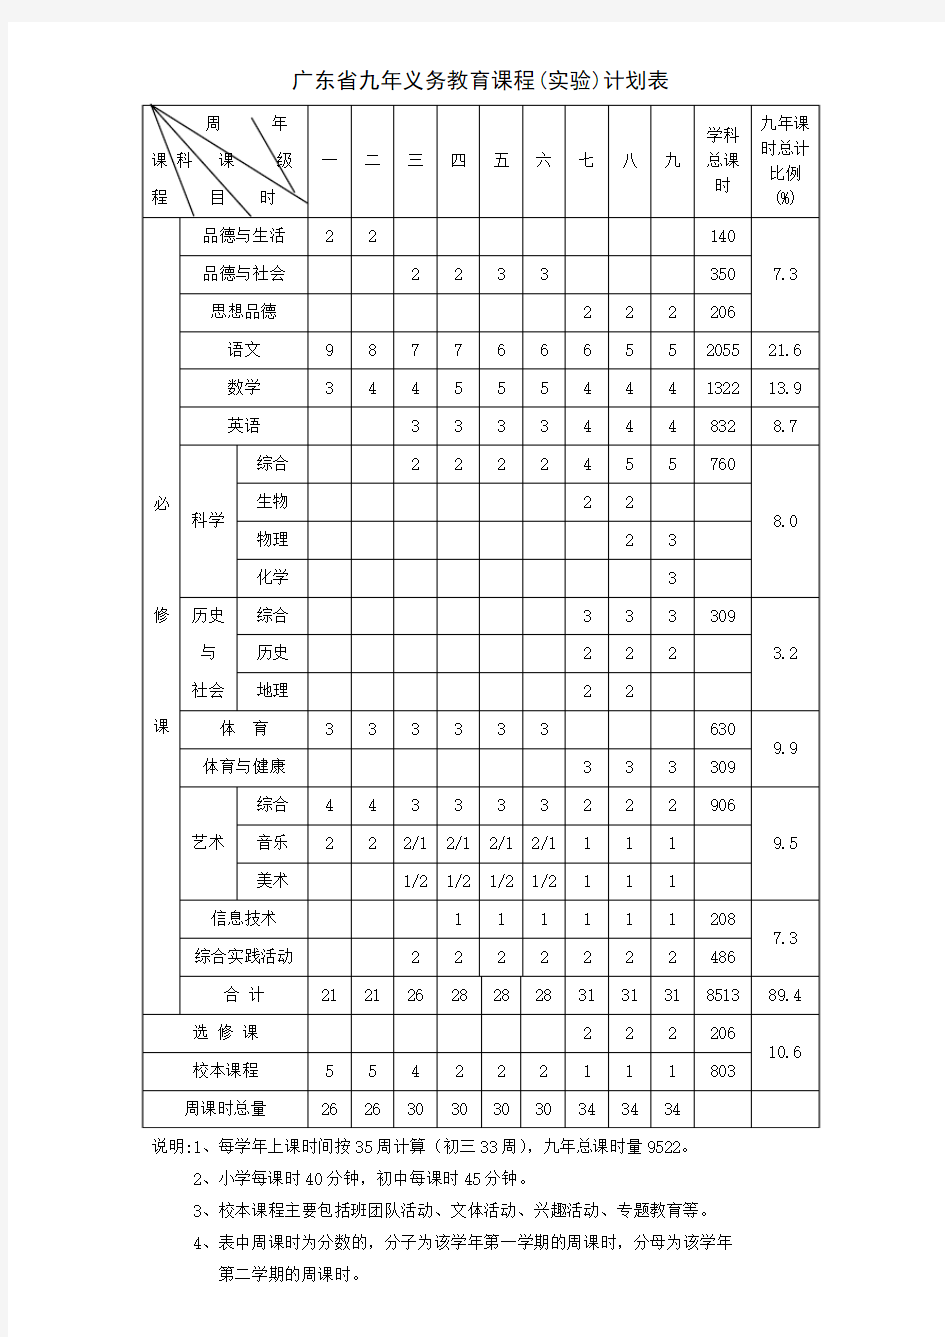 广东省九年义务教育课程(实验)计划表